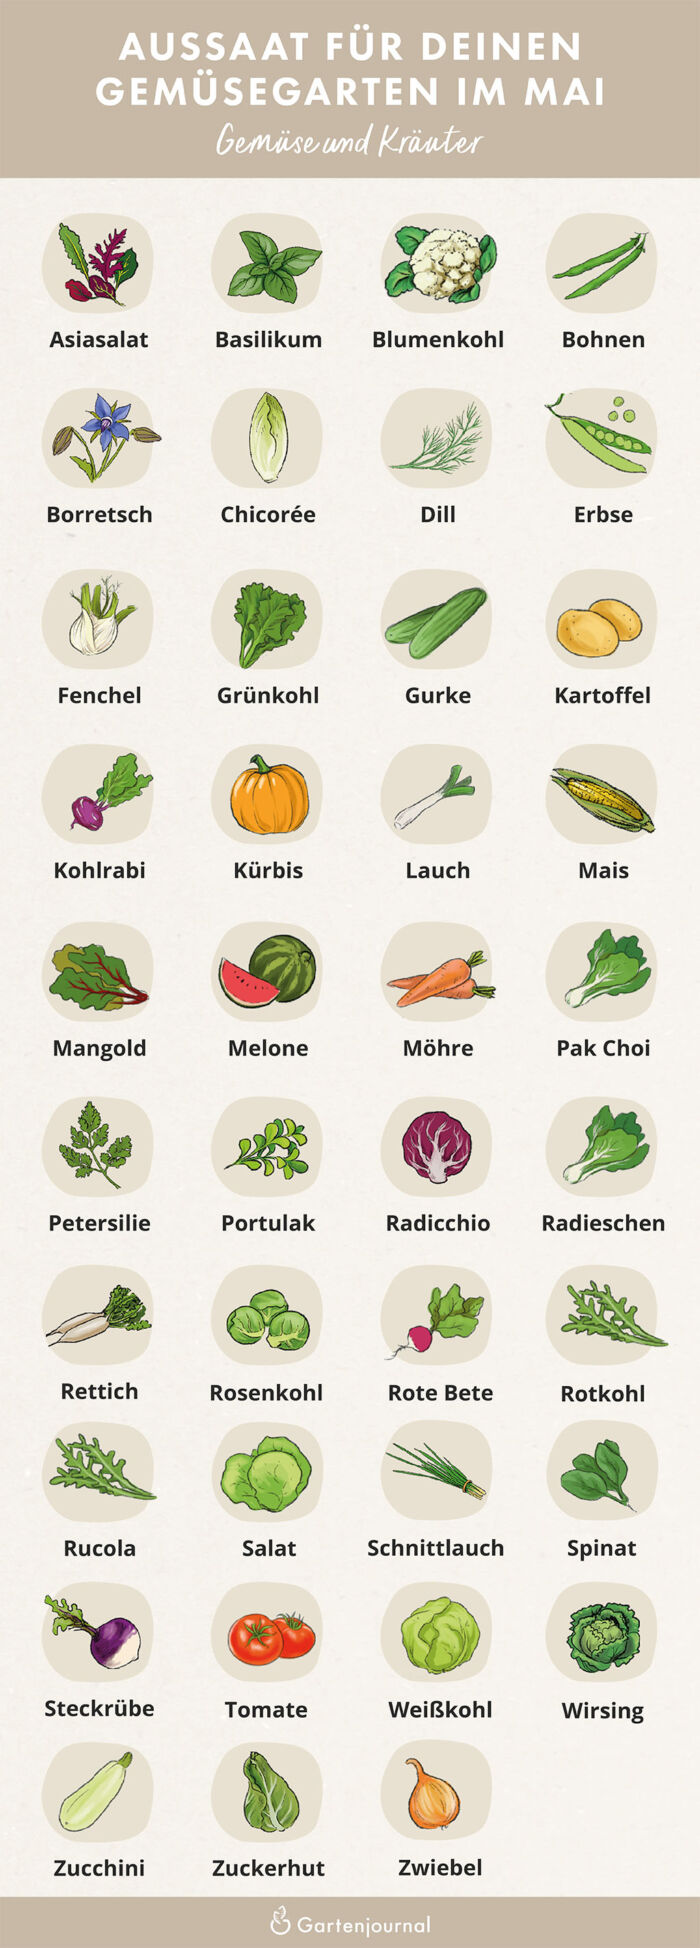 Illustrierter Gartenkalender der zeigt, welche Gemüse und Kräuter im Mai ausgesät werden